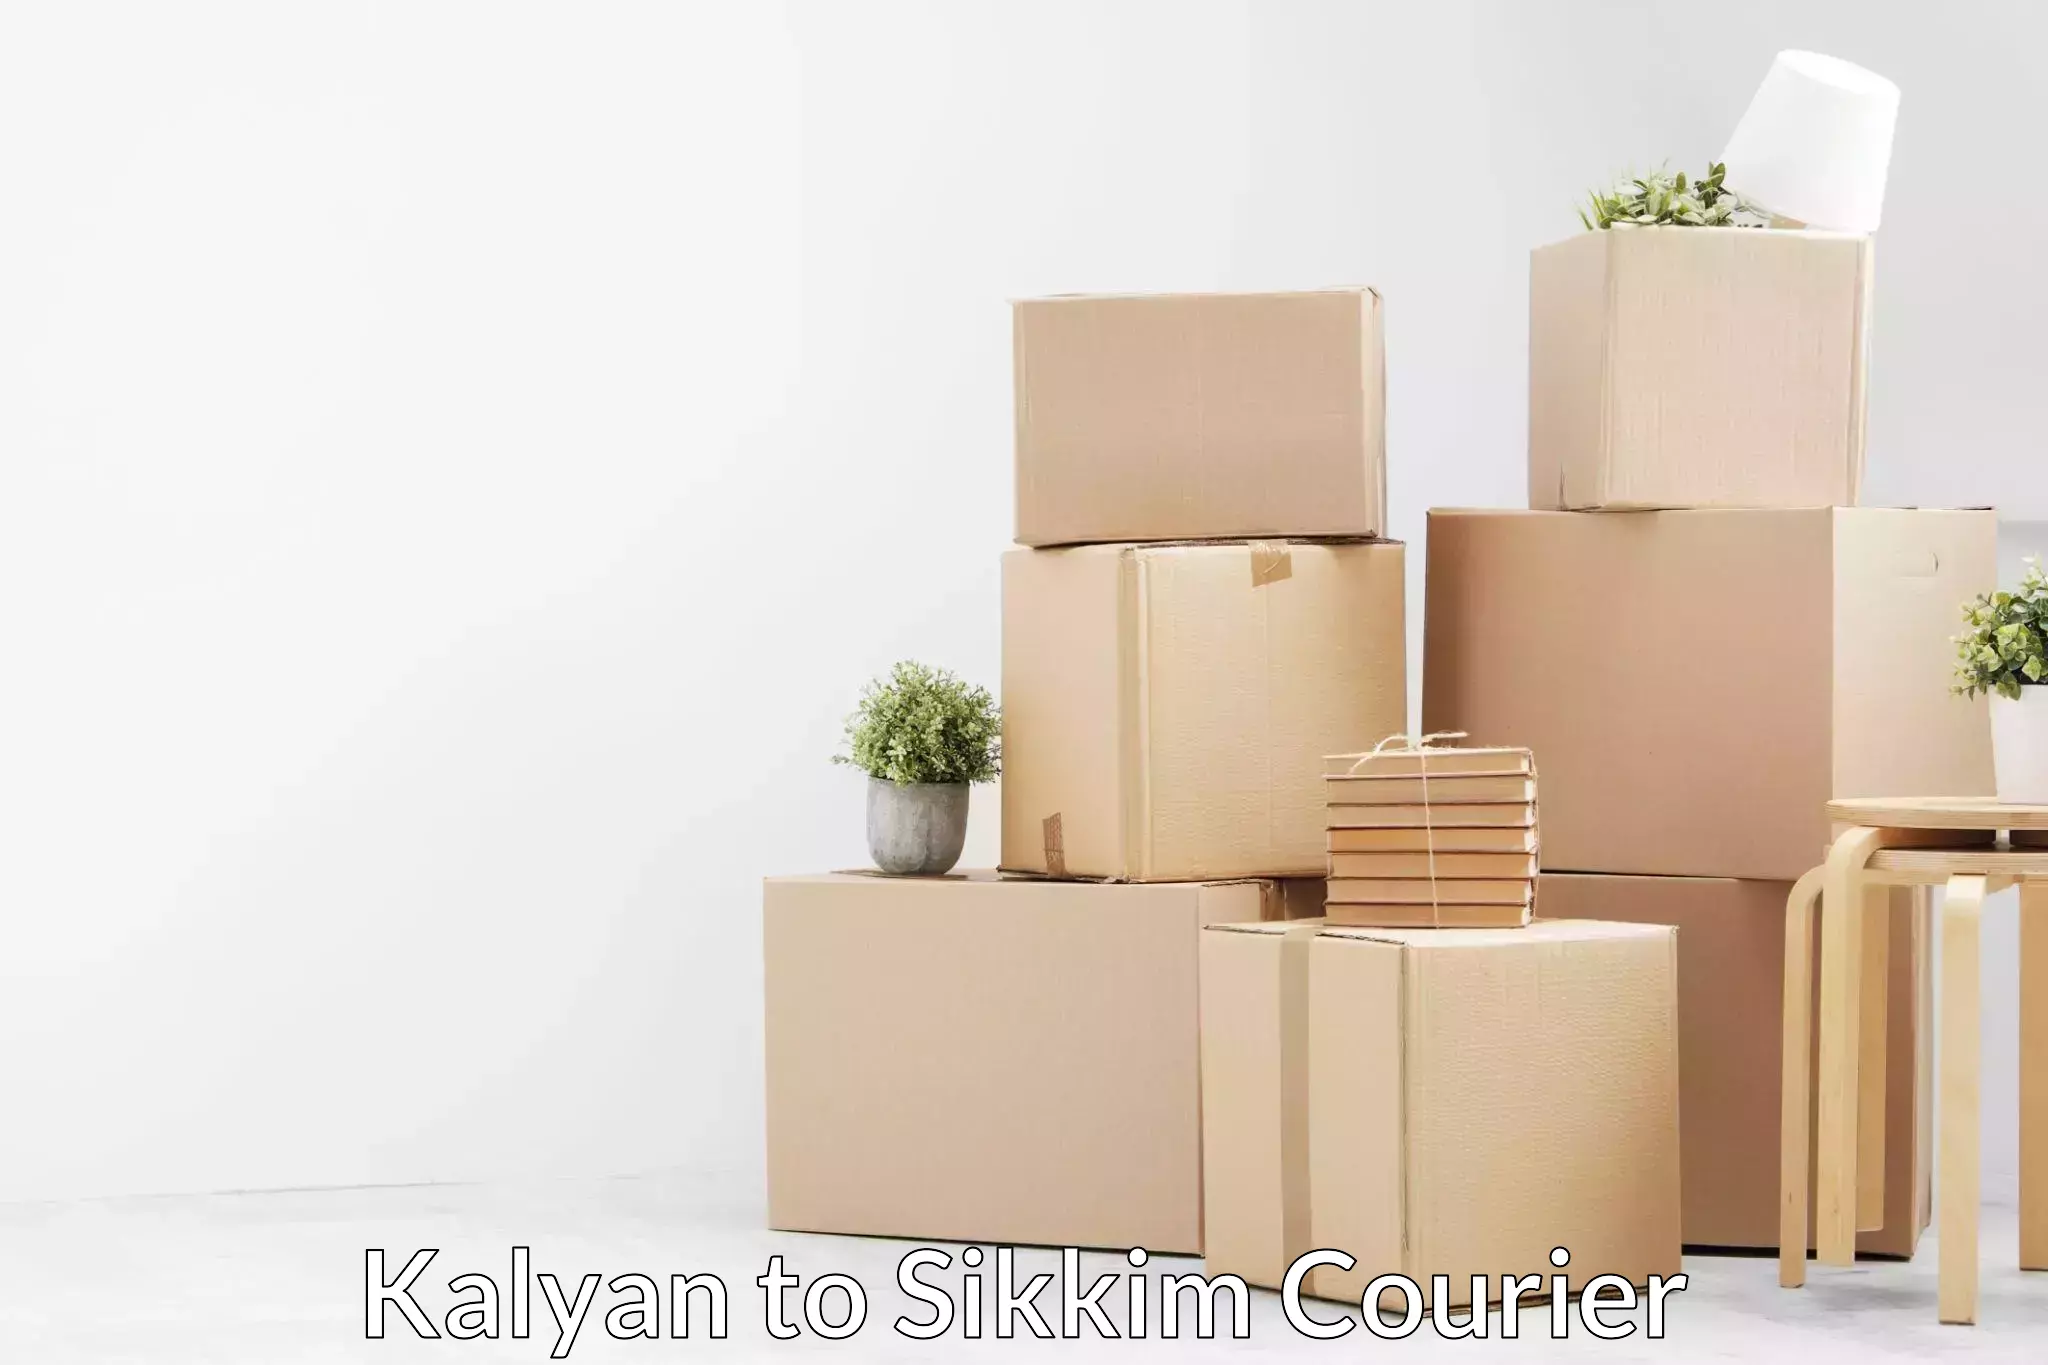 Furniture moving experts Kalyan to Sikkim